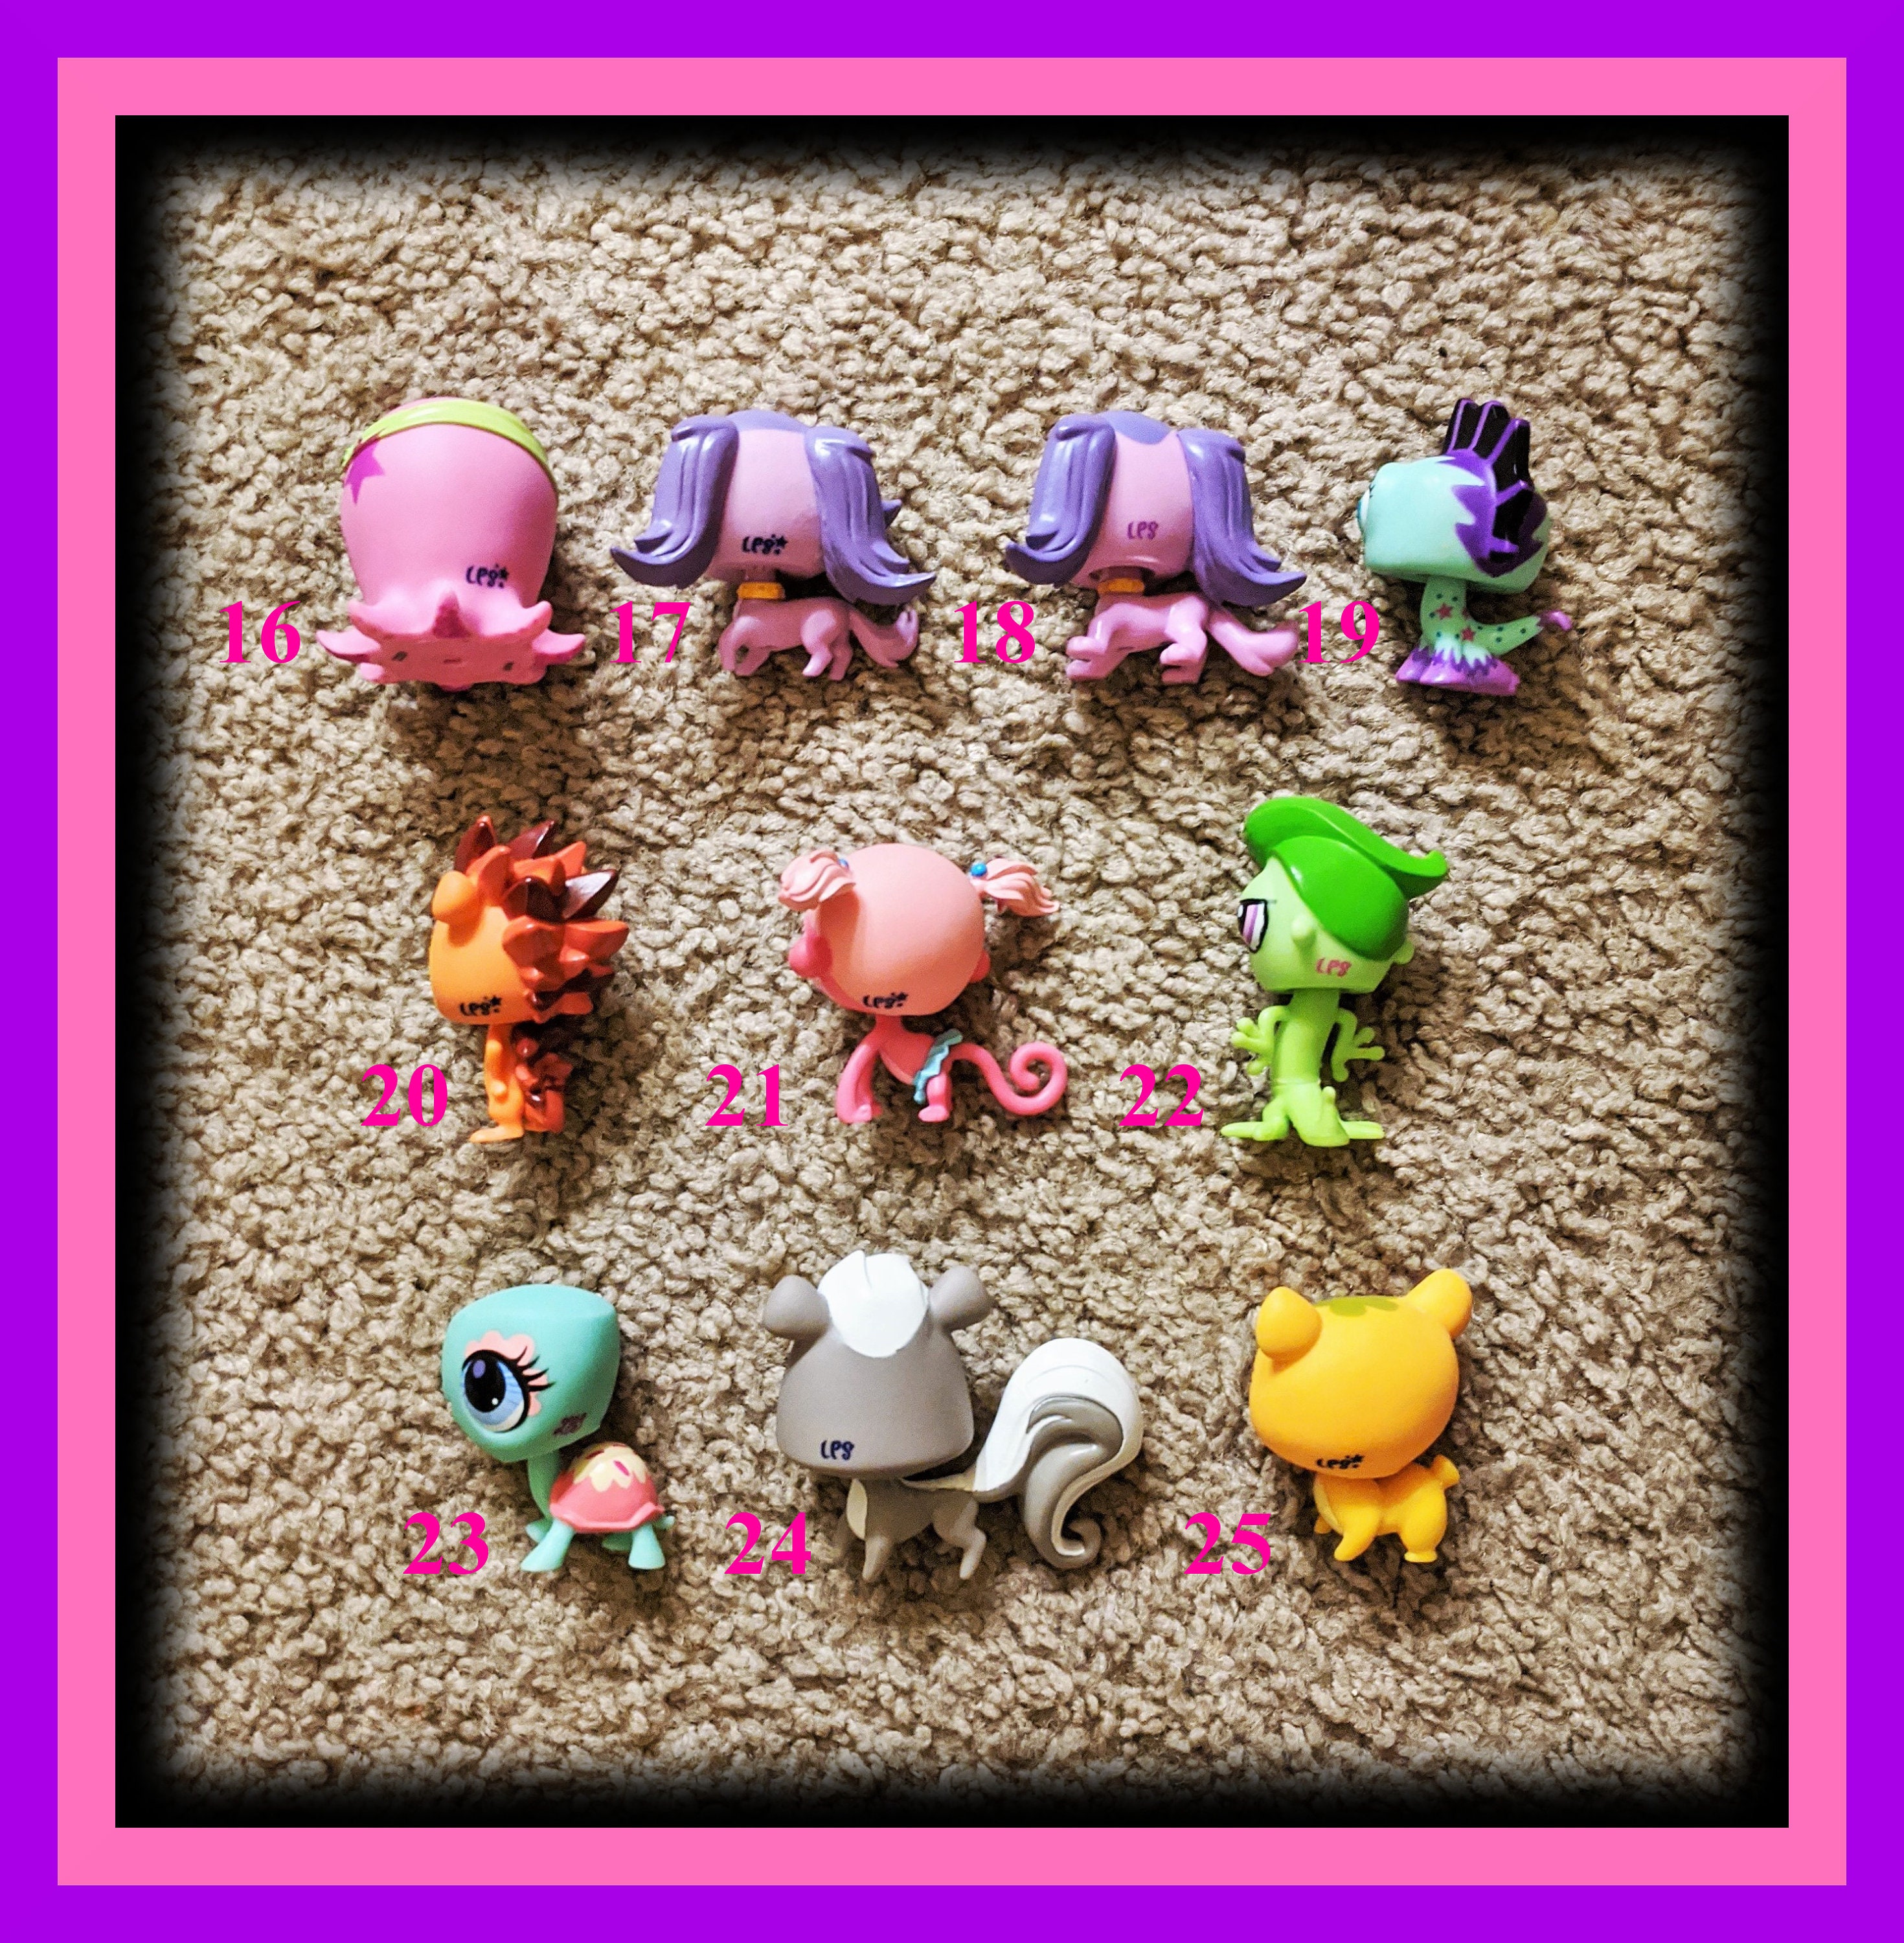  Littlest Pet Shop Blind Bag 1 : Toys & Games